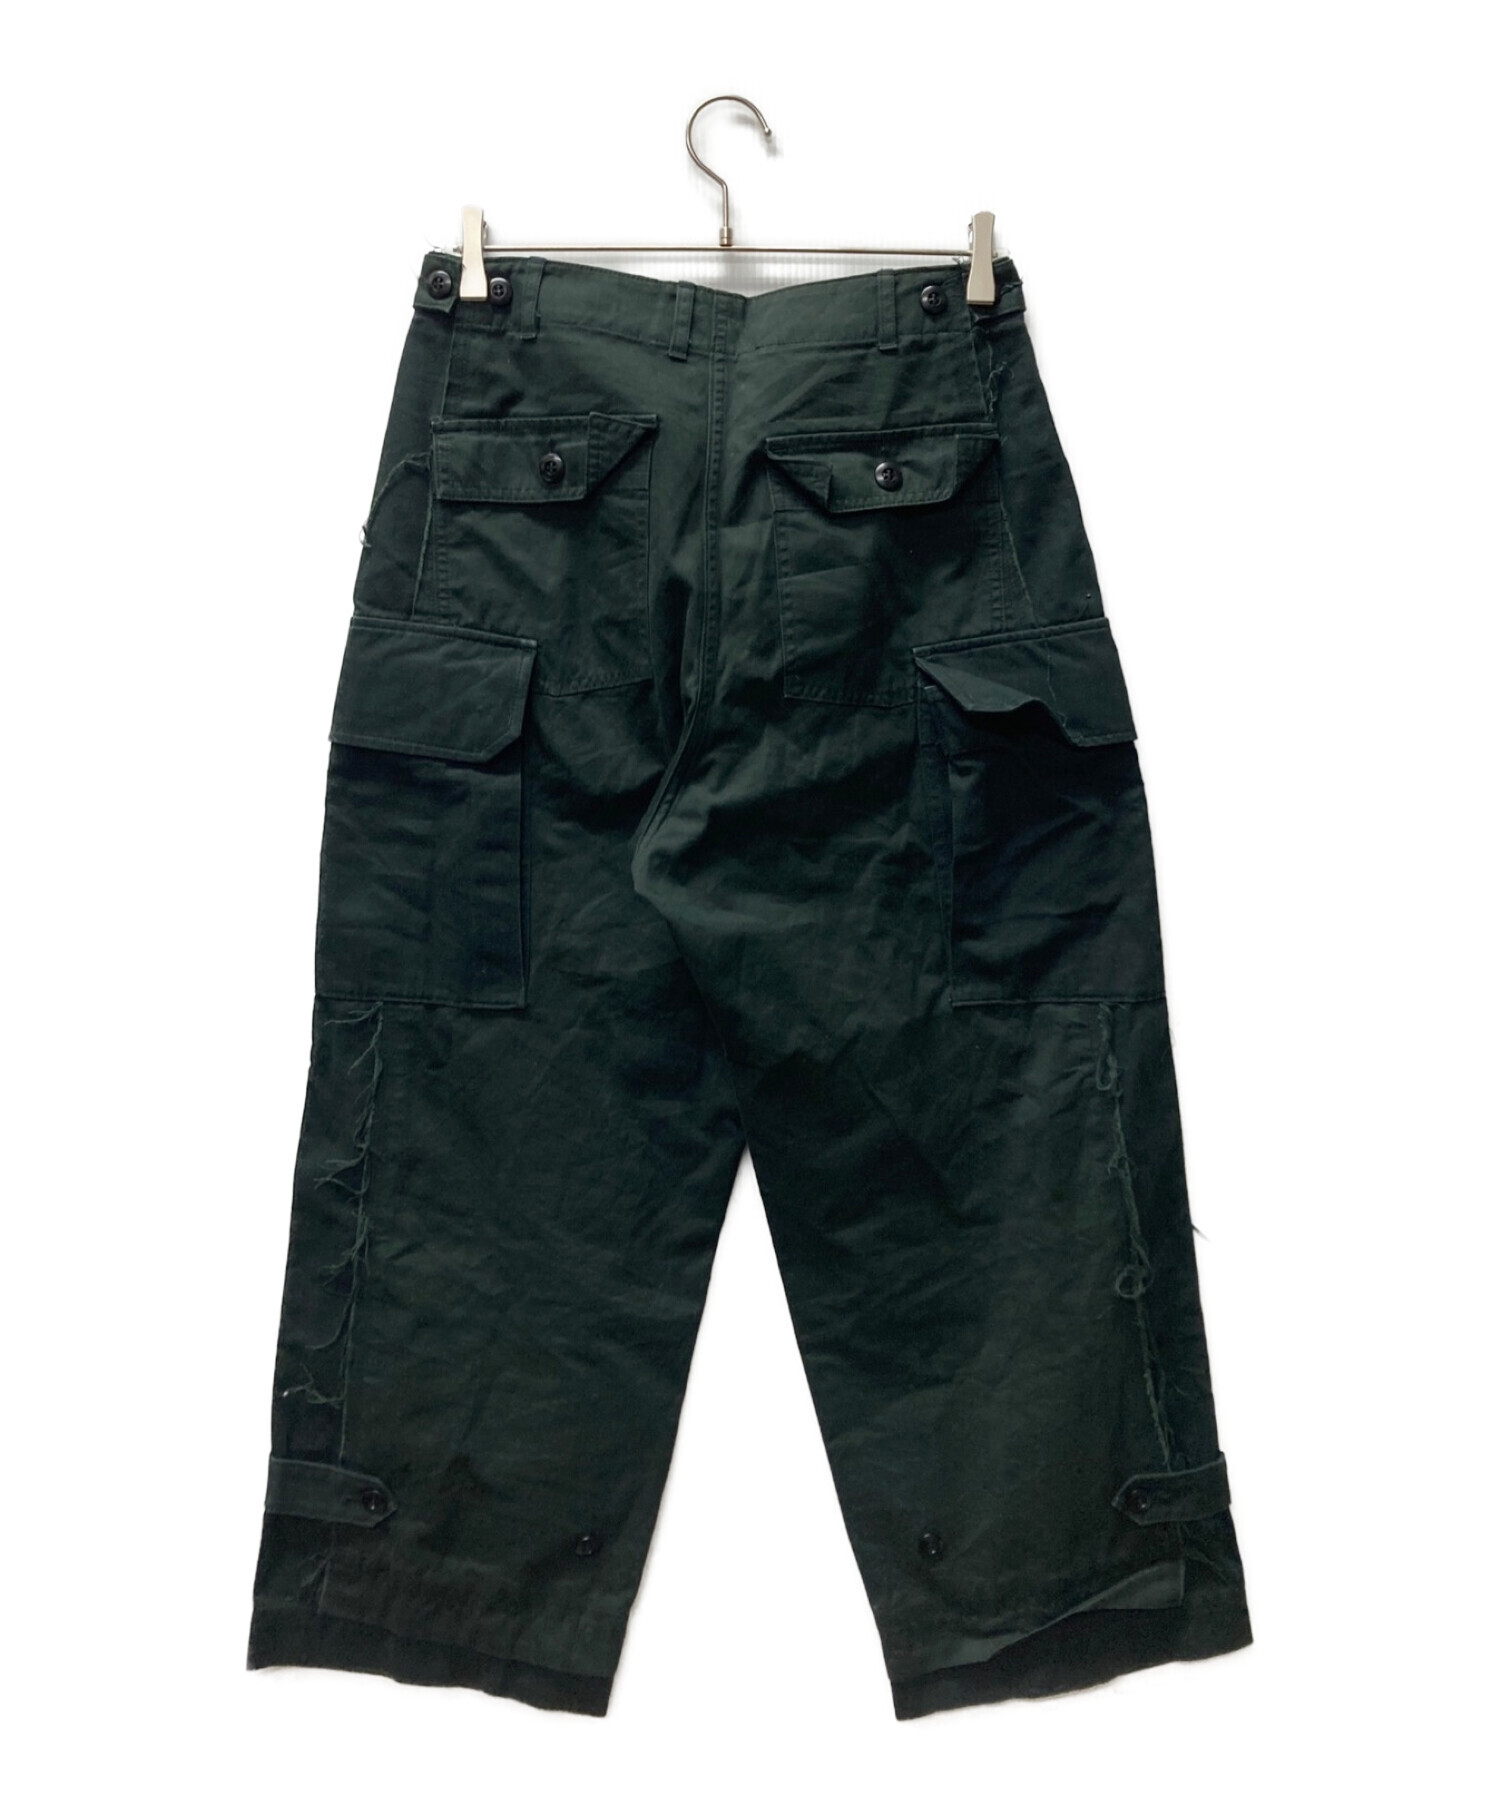 STANDARD JOURNAL (スタンダード ジャーナル) Military Pants ブラック サイズ:S